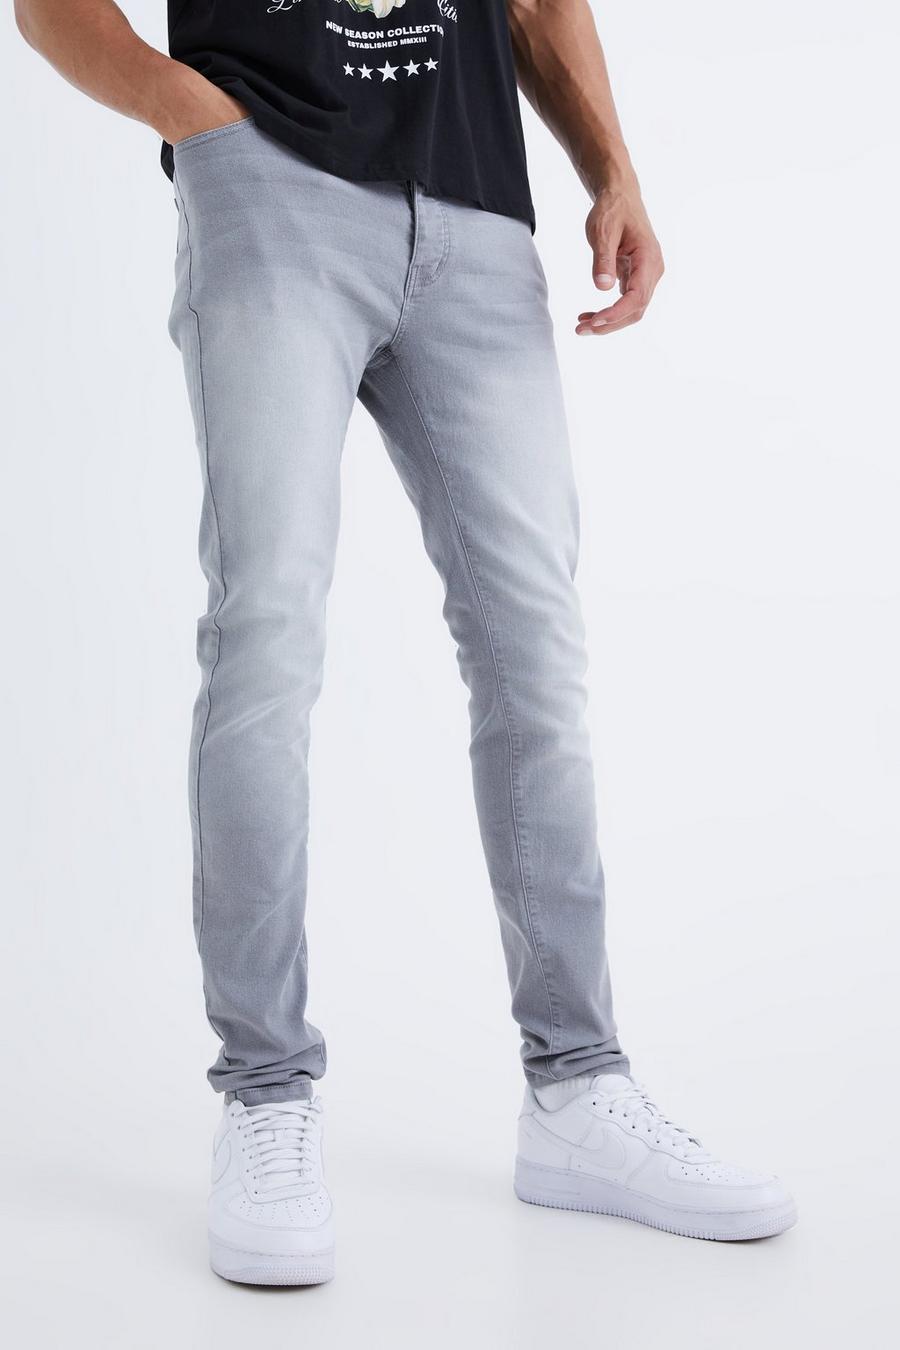 Mid grey grigio Tall Skinny Stretch Jean